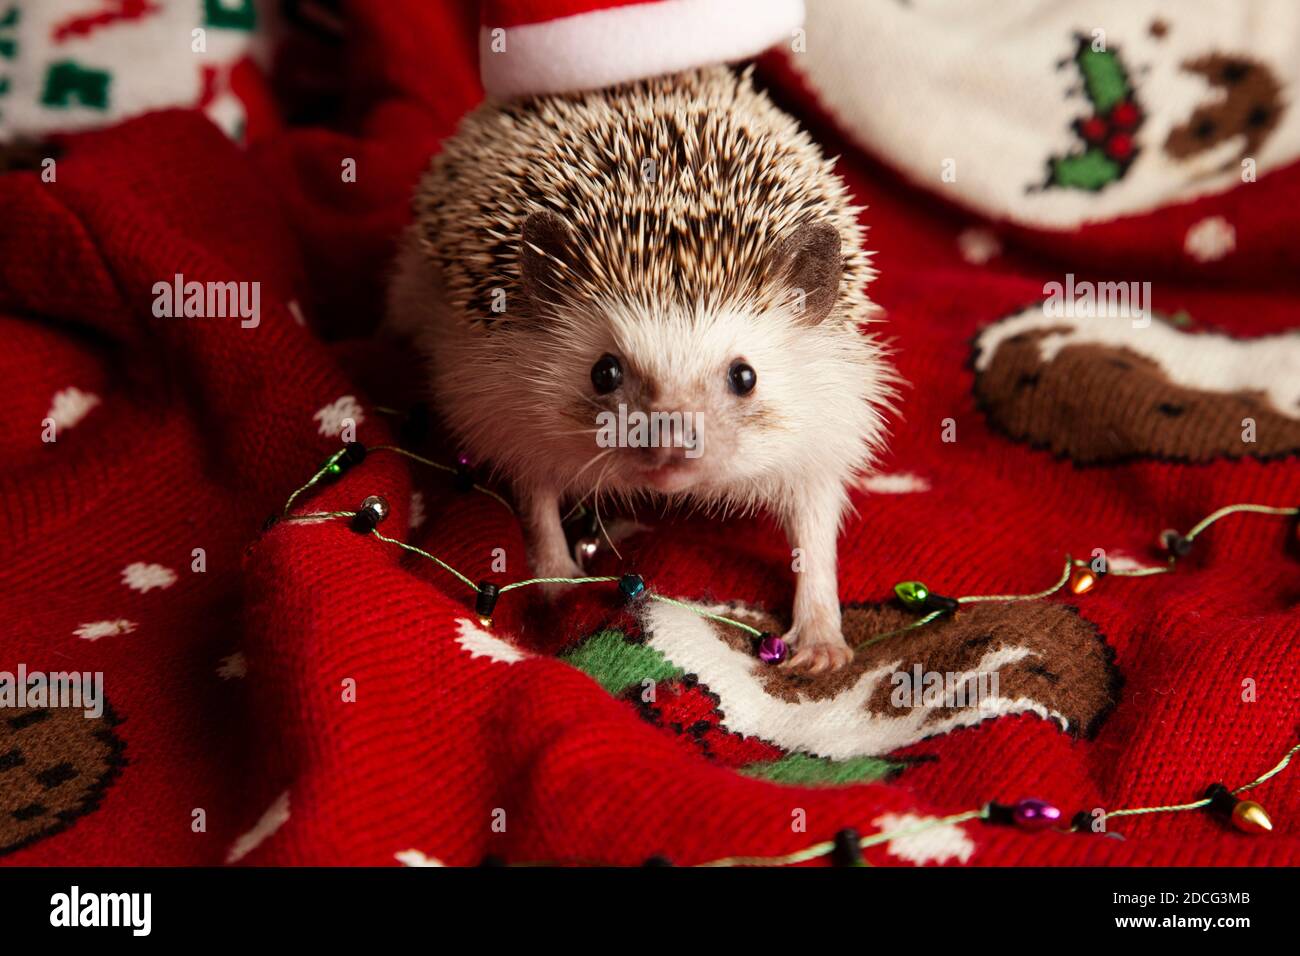 A Christmas Hedgehog Stock Photo